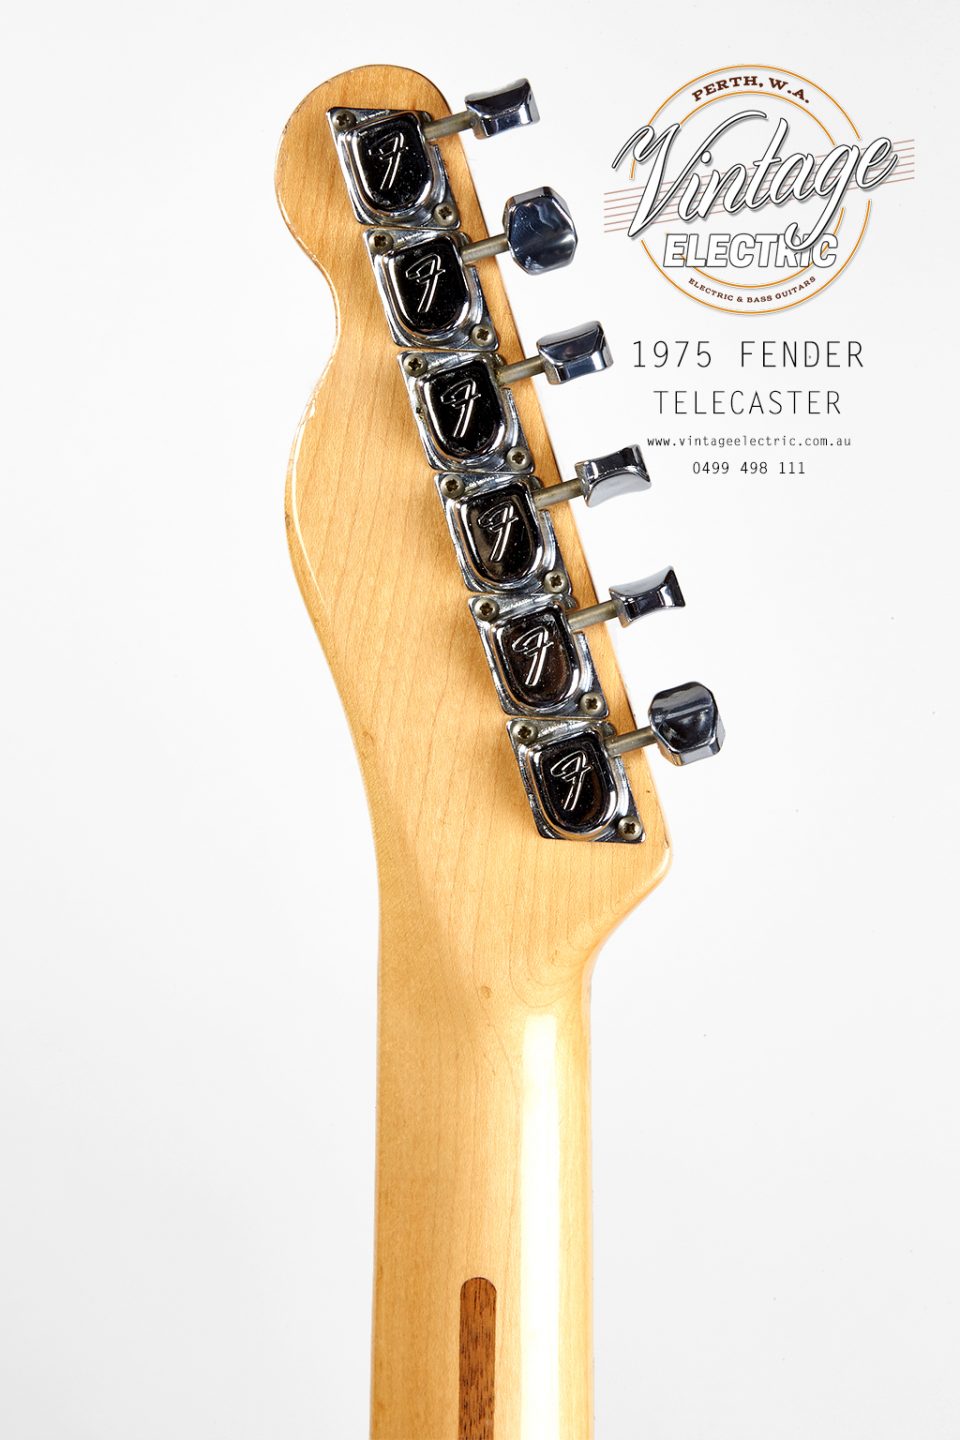 1975 Fender Telecaster Back of Headstock